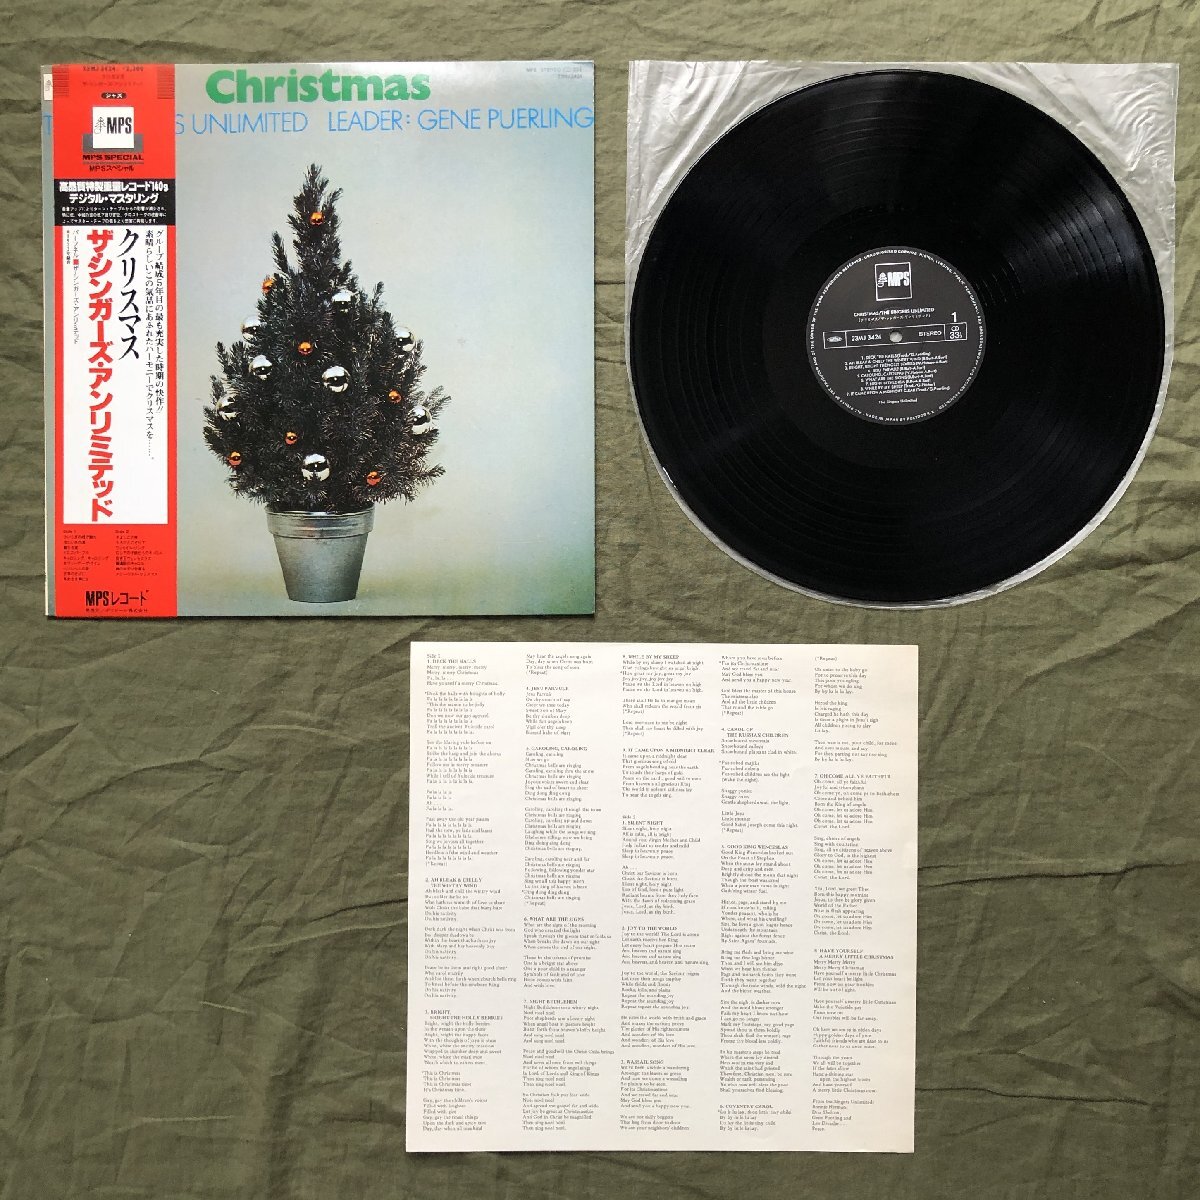 傷なし美盤 美ジャケ レア 高音質デジタル・マスタリング盤 1984年 国内盤 Singers Unlimited LPレコード Christmas 名盤 帯付 140g重量盤_画像5